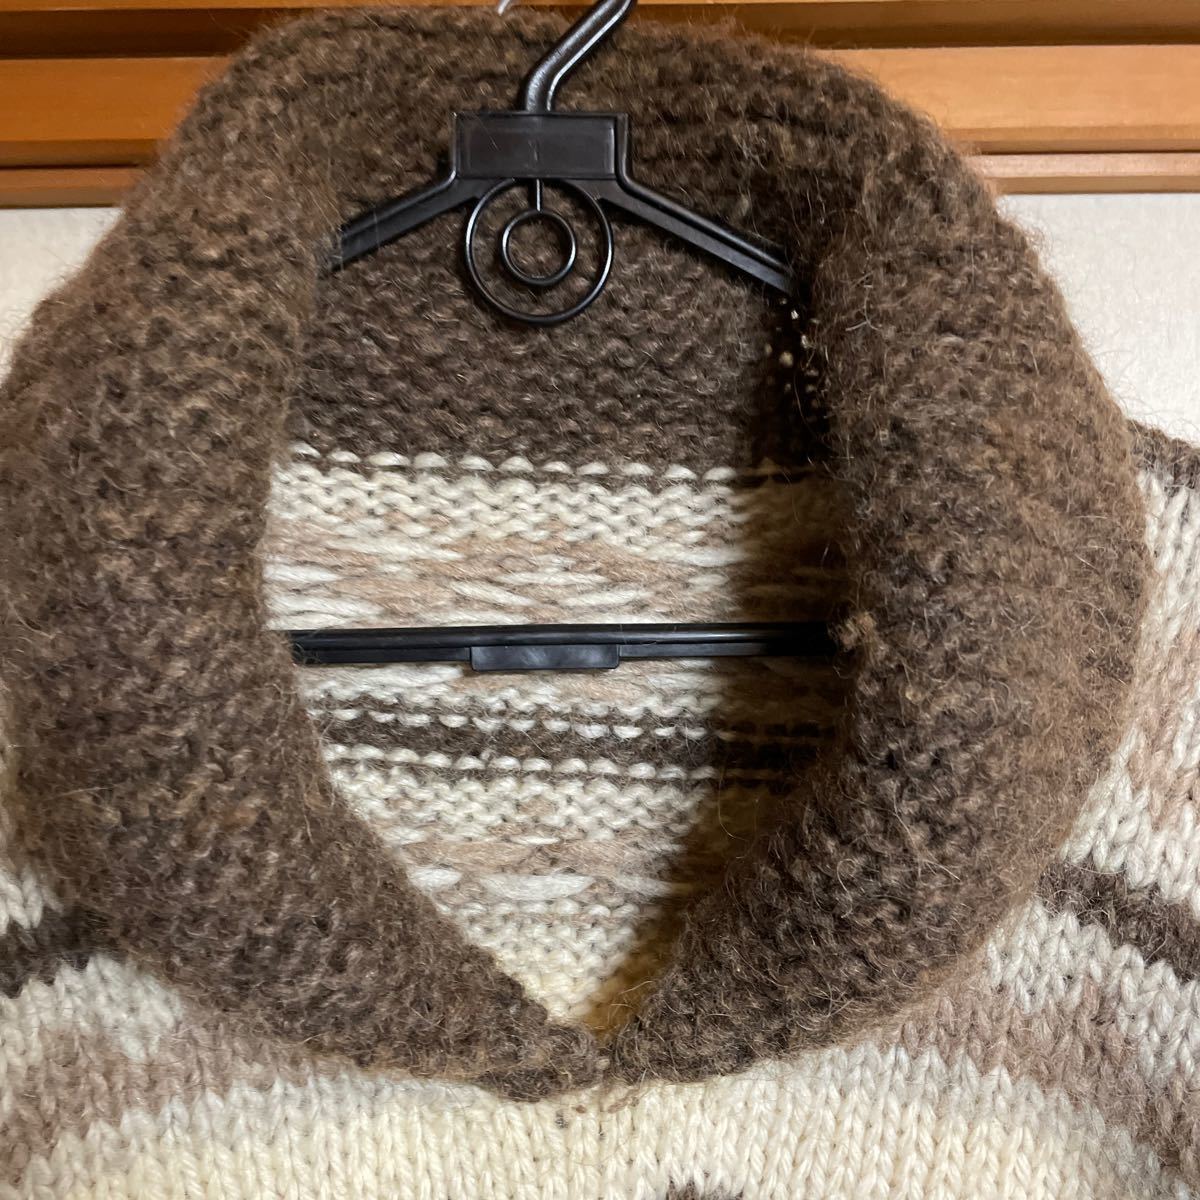 10%割引可能！カナダ製高級毛糸。母の手編み　カウチンセーター ショールカラー　身長173の私に半年かけて編んだカウチンニット。